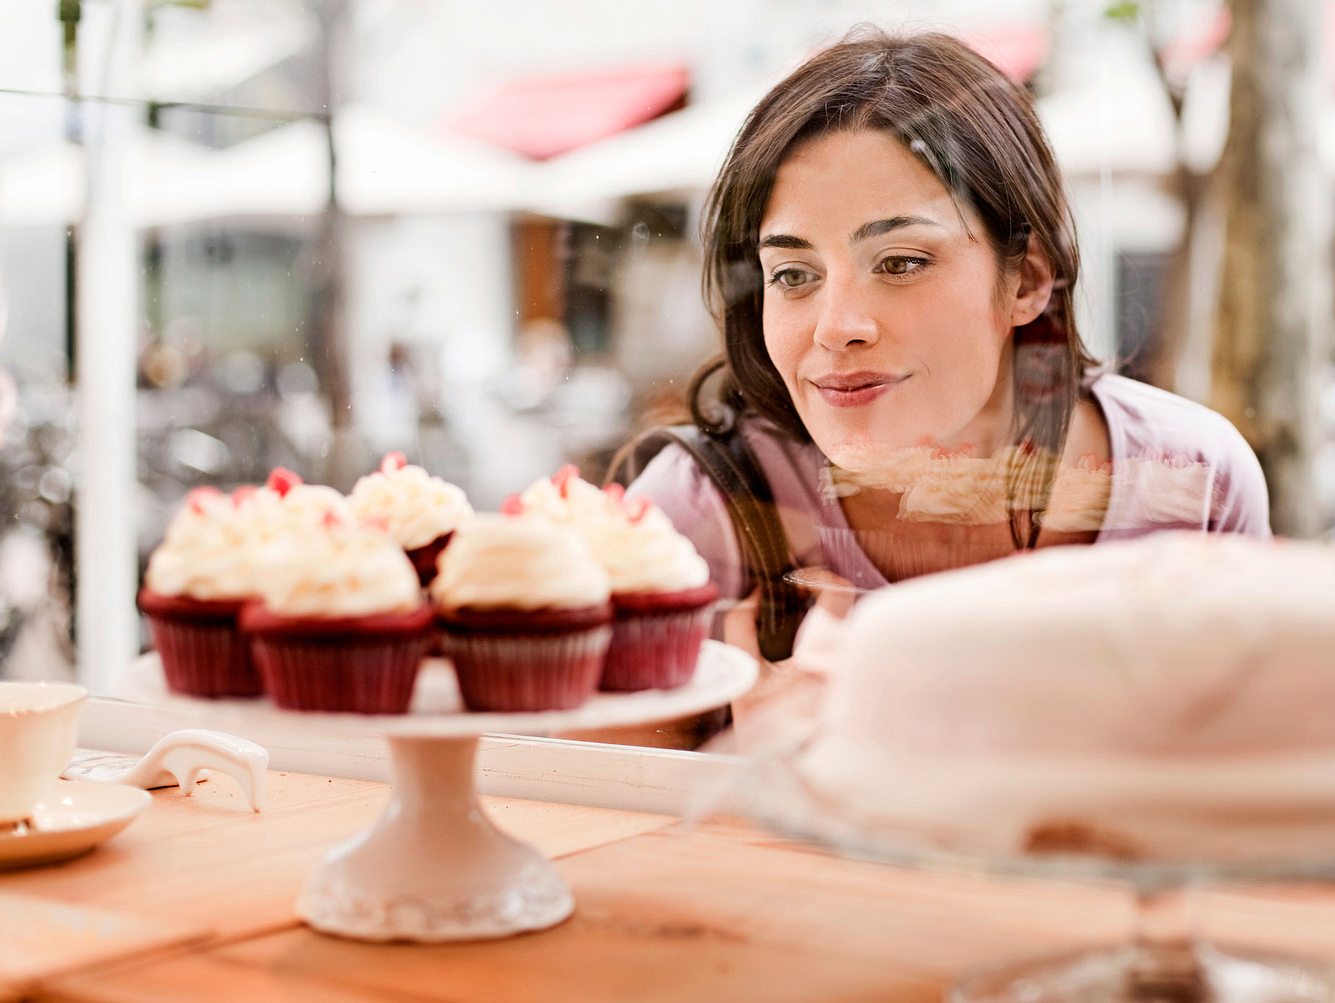 Natürliche Appetitzügler helfen, auf Süßigkeiten wie Cupcakes besser verzichten zu können